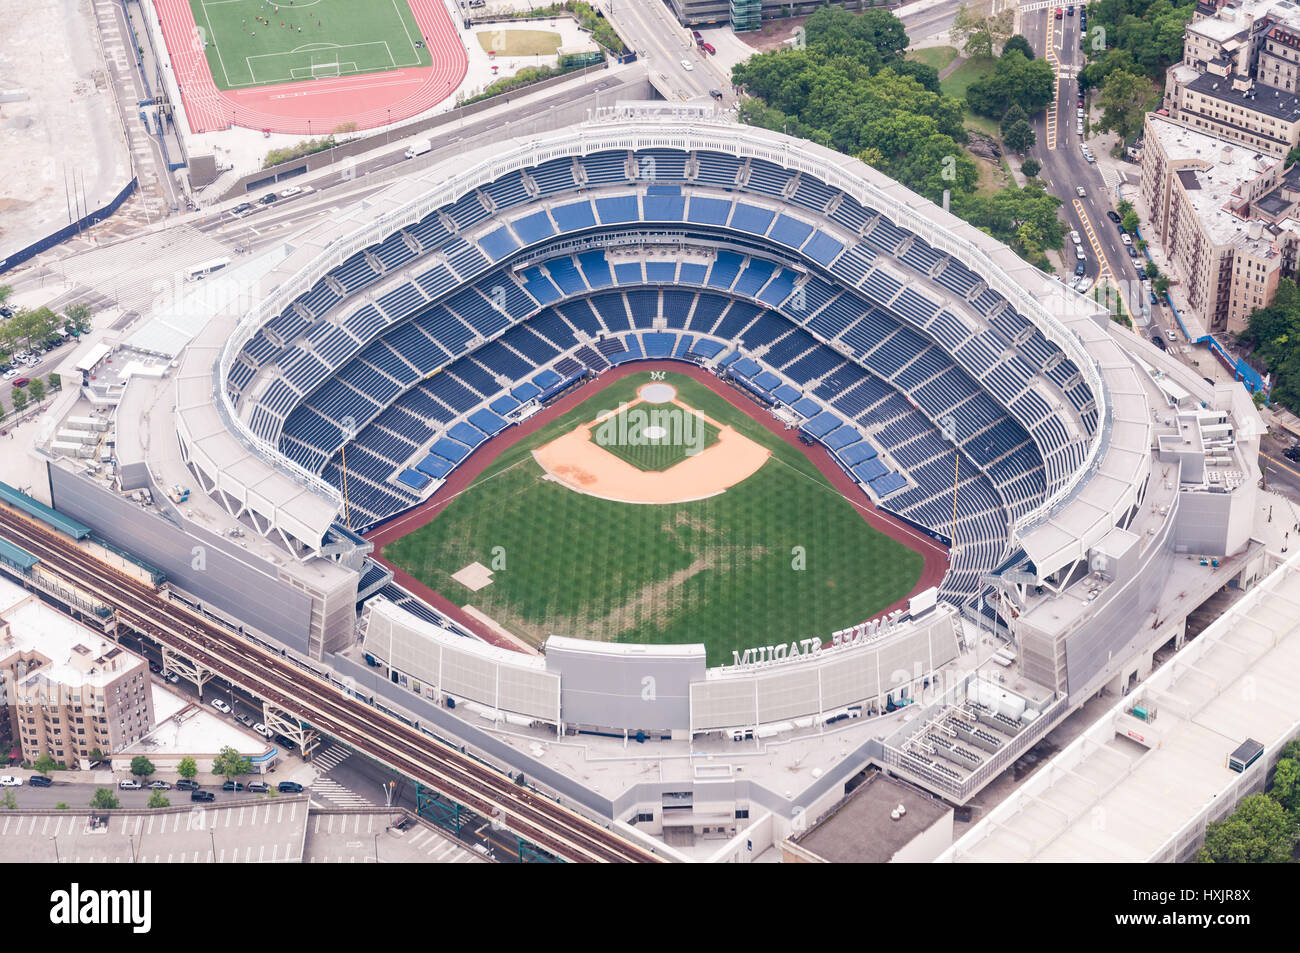 Yankee Stadium vue aérienne pendant la journée, New York, USA Banque D'Images